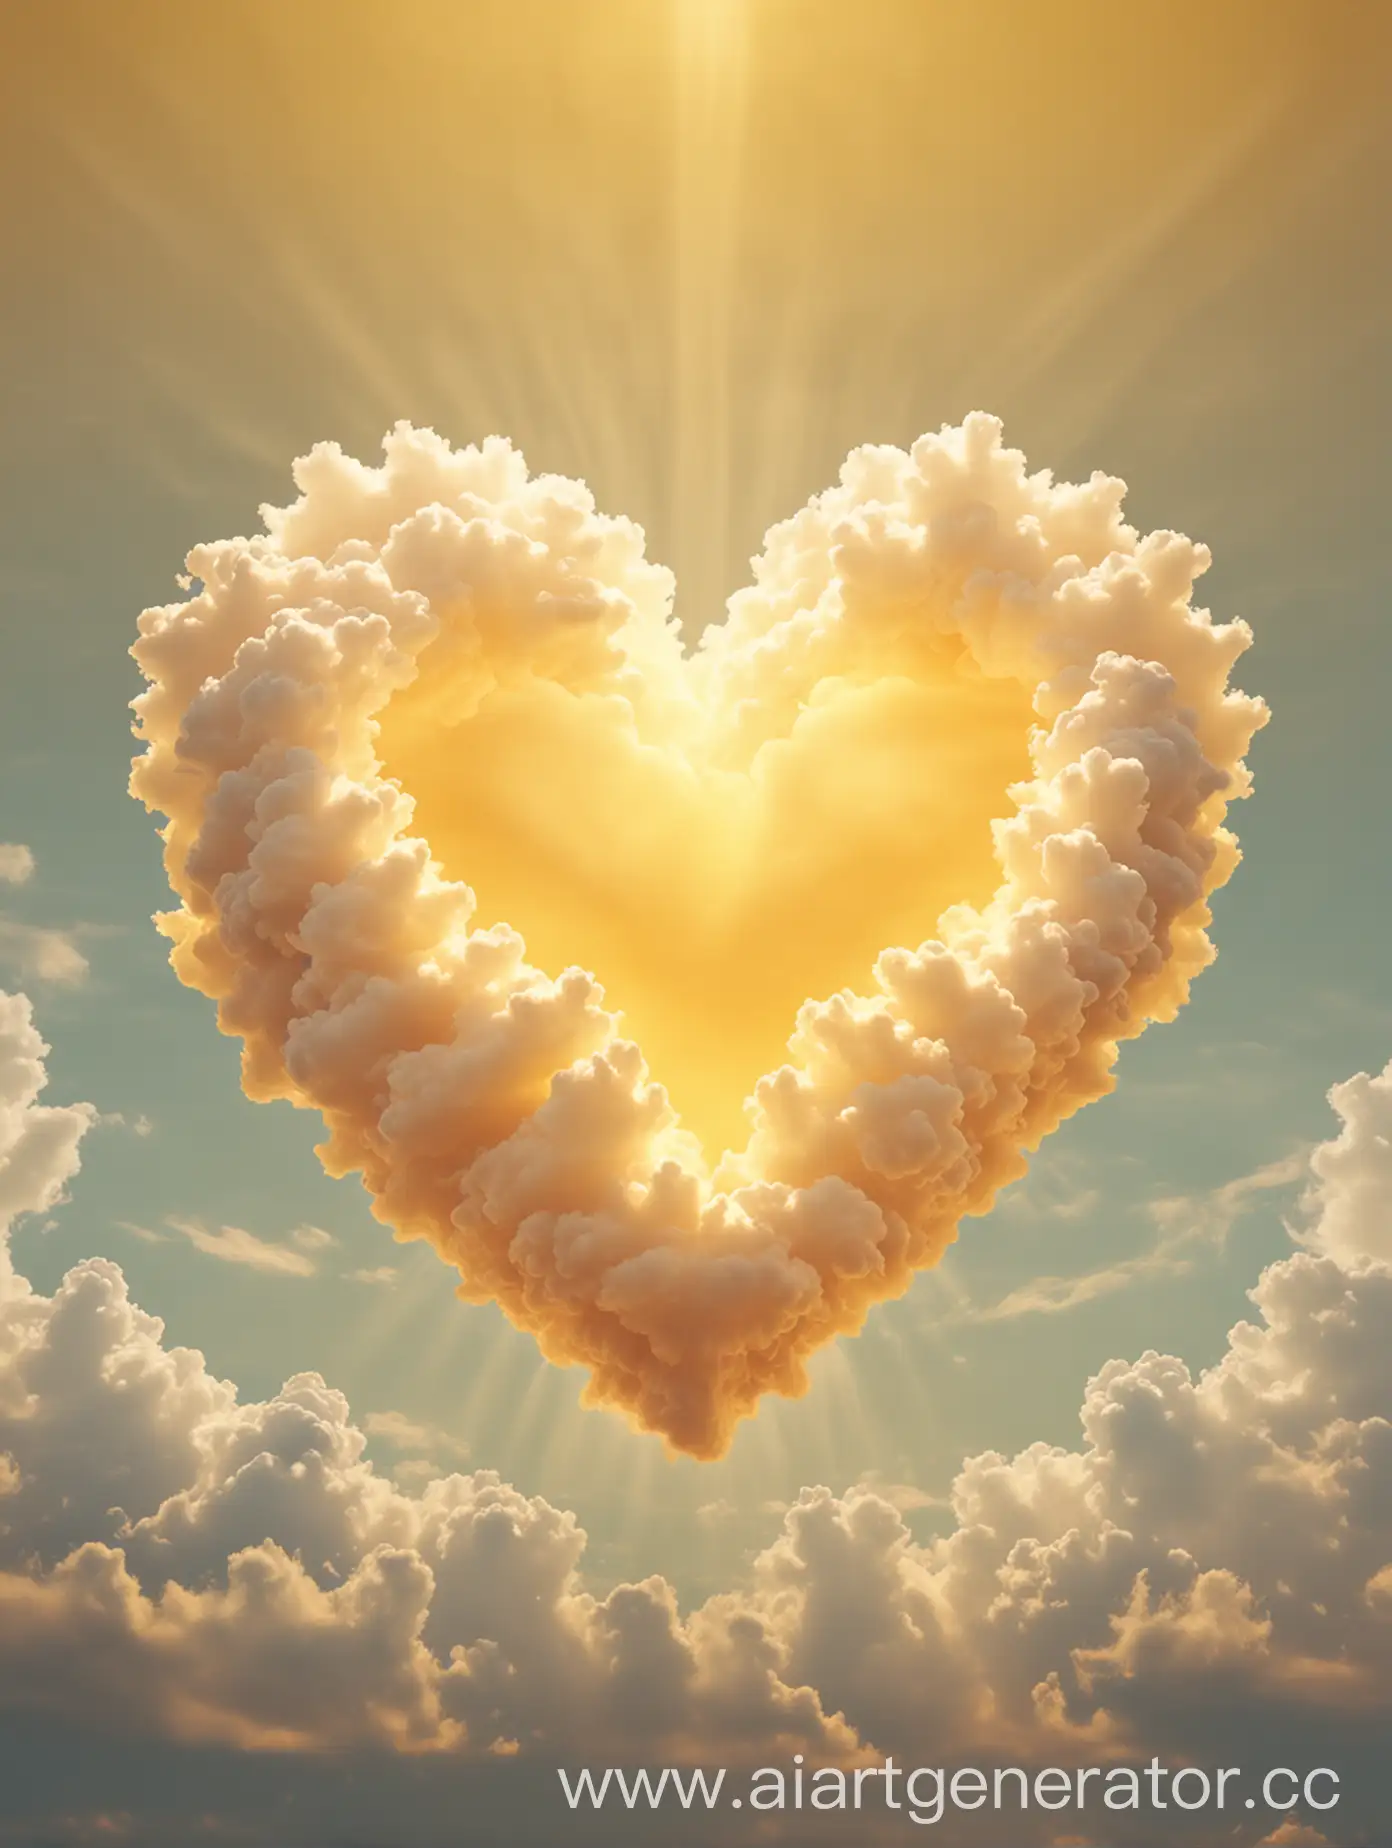 Облако в форме сердца, расположено посередине, светится,  нежно-жёлтого цвета, фон однотонный 